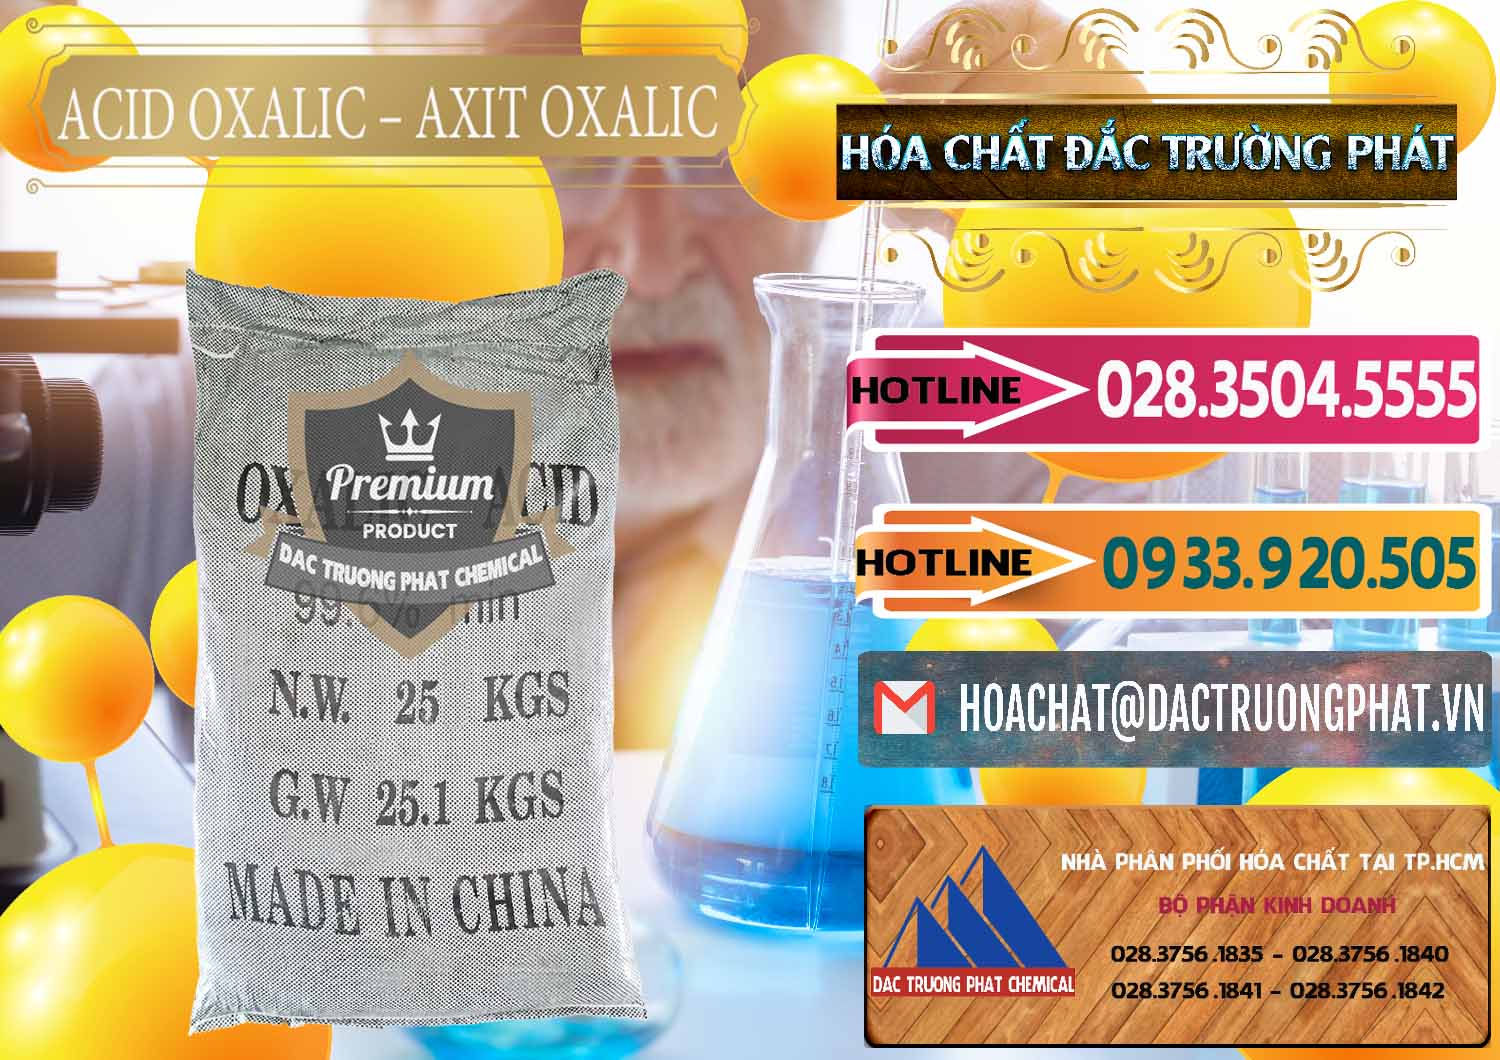 Cty chuyên phân phối ( bán ) Acid Oxalic – Axit Oxalic 99.6% Trung Quốc China - 0014 - Nơi chuyên kinh doanh - phân phối hóa chất tại TP.HCM - dactruongphat.vn